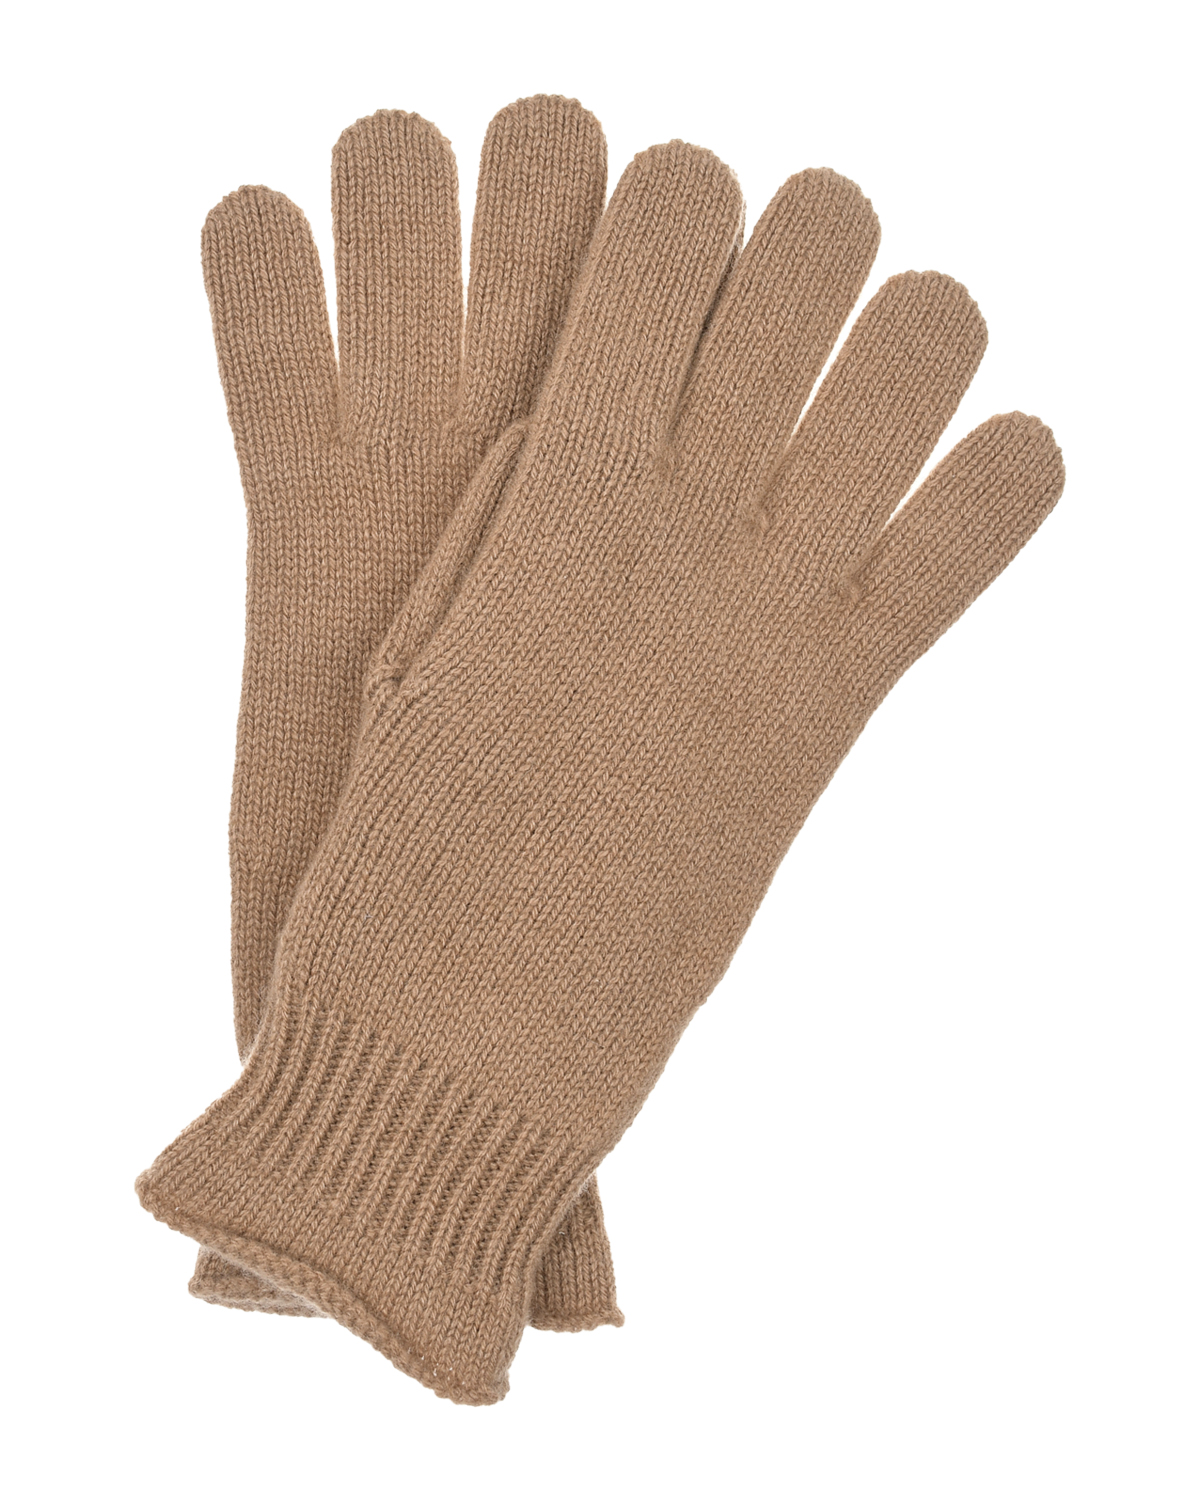 Коричневые кашемировые перчатки Panicale, размер unica, цвет коричневый - фото 1